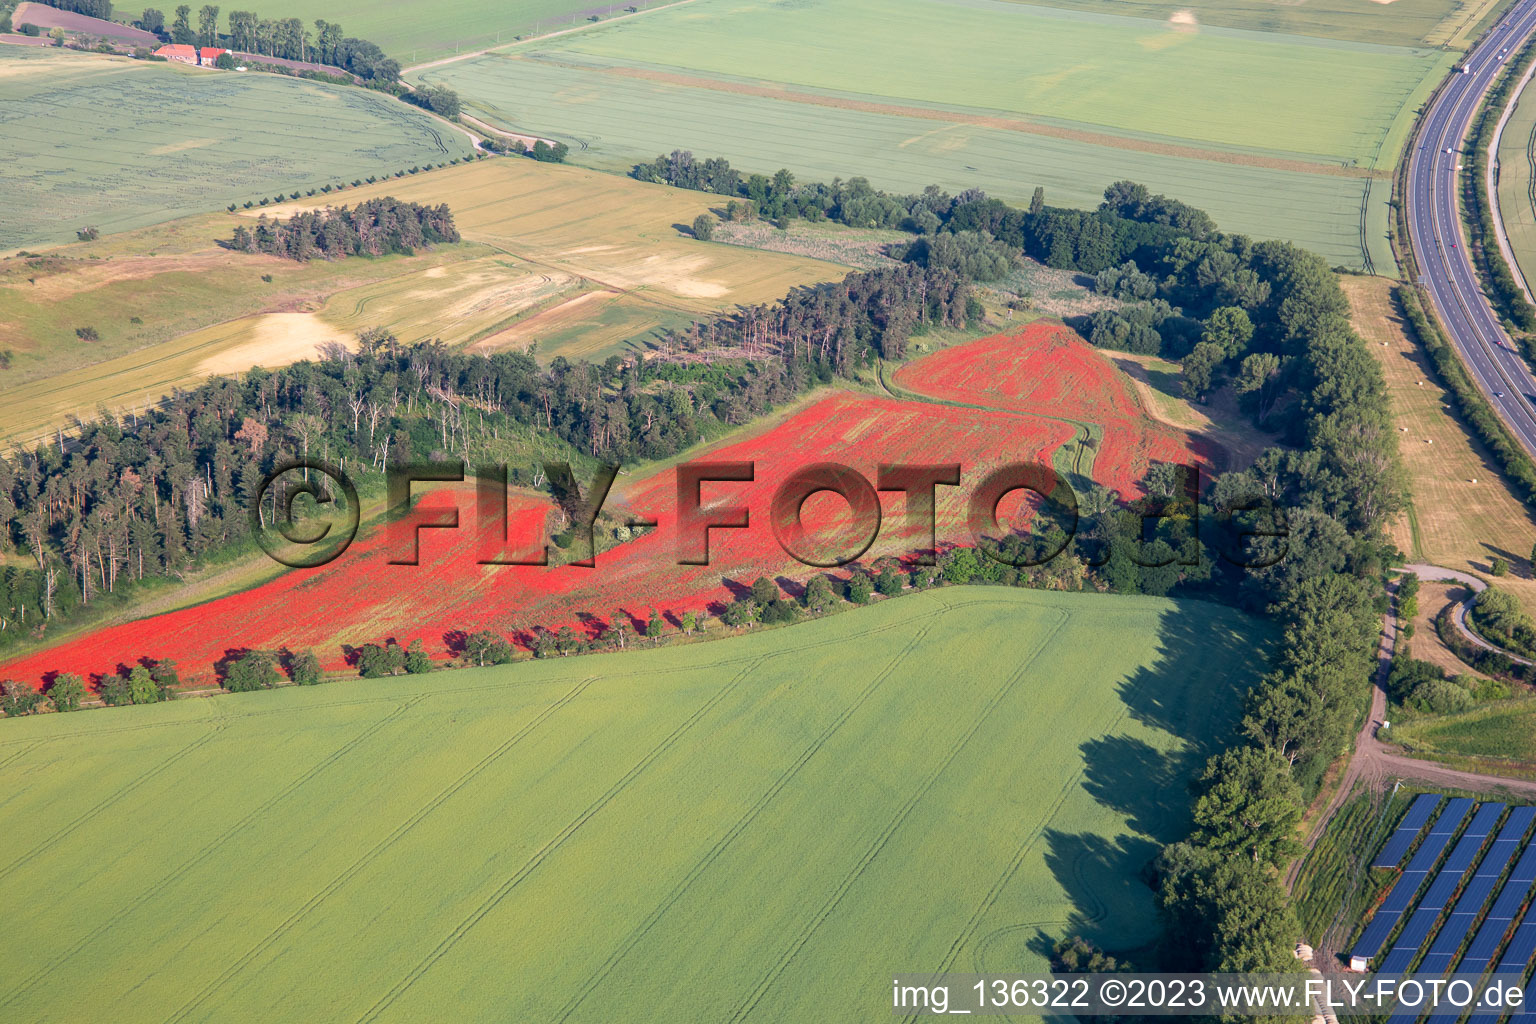 Luftbild von Klatschmohnfelder im Ortsteil Westerhausen in Thale im Bundesland Sachsen-Anhalt, Deutschland